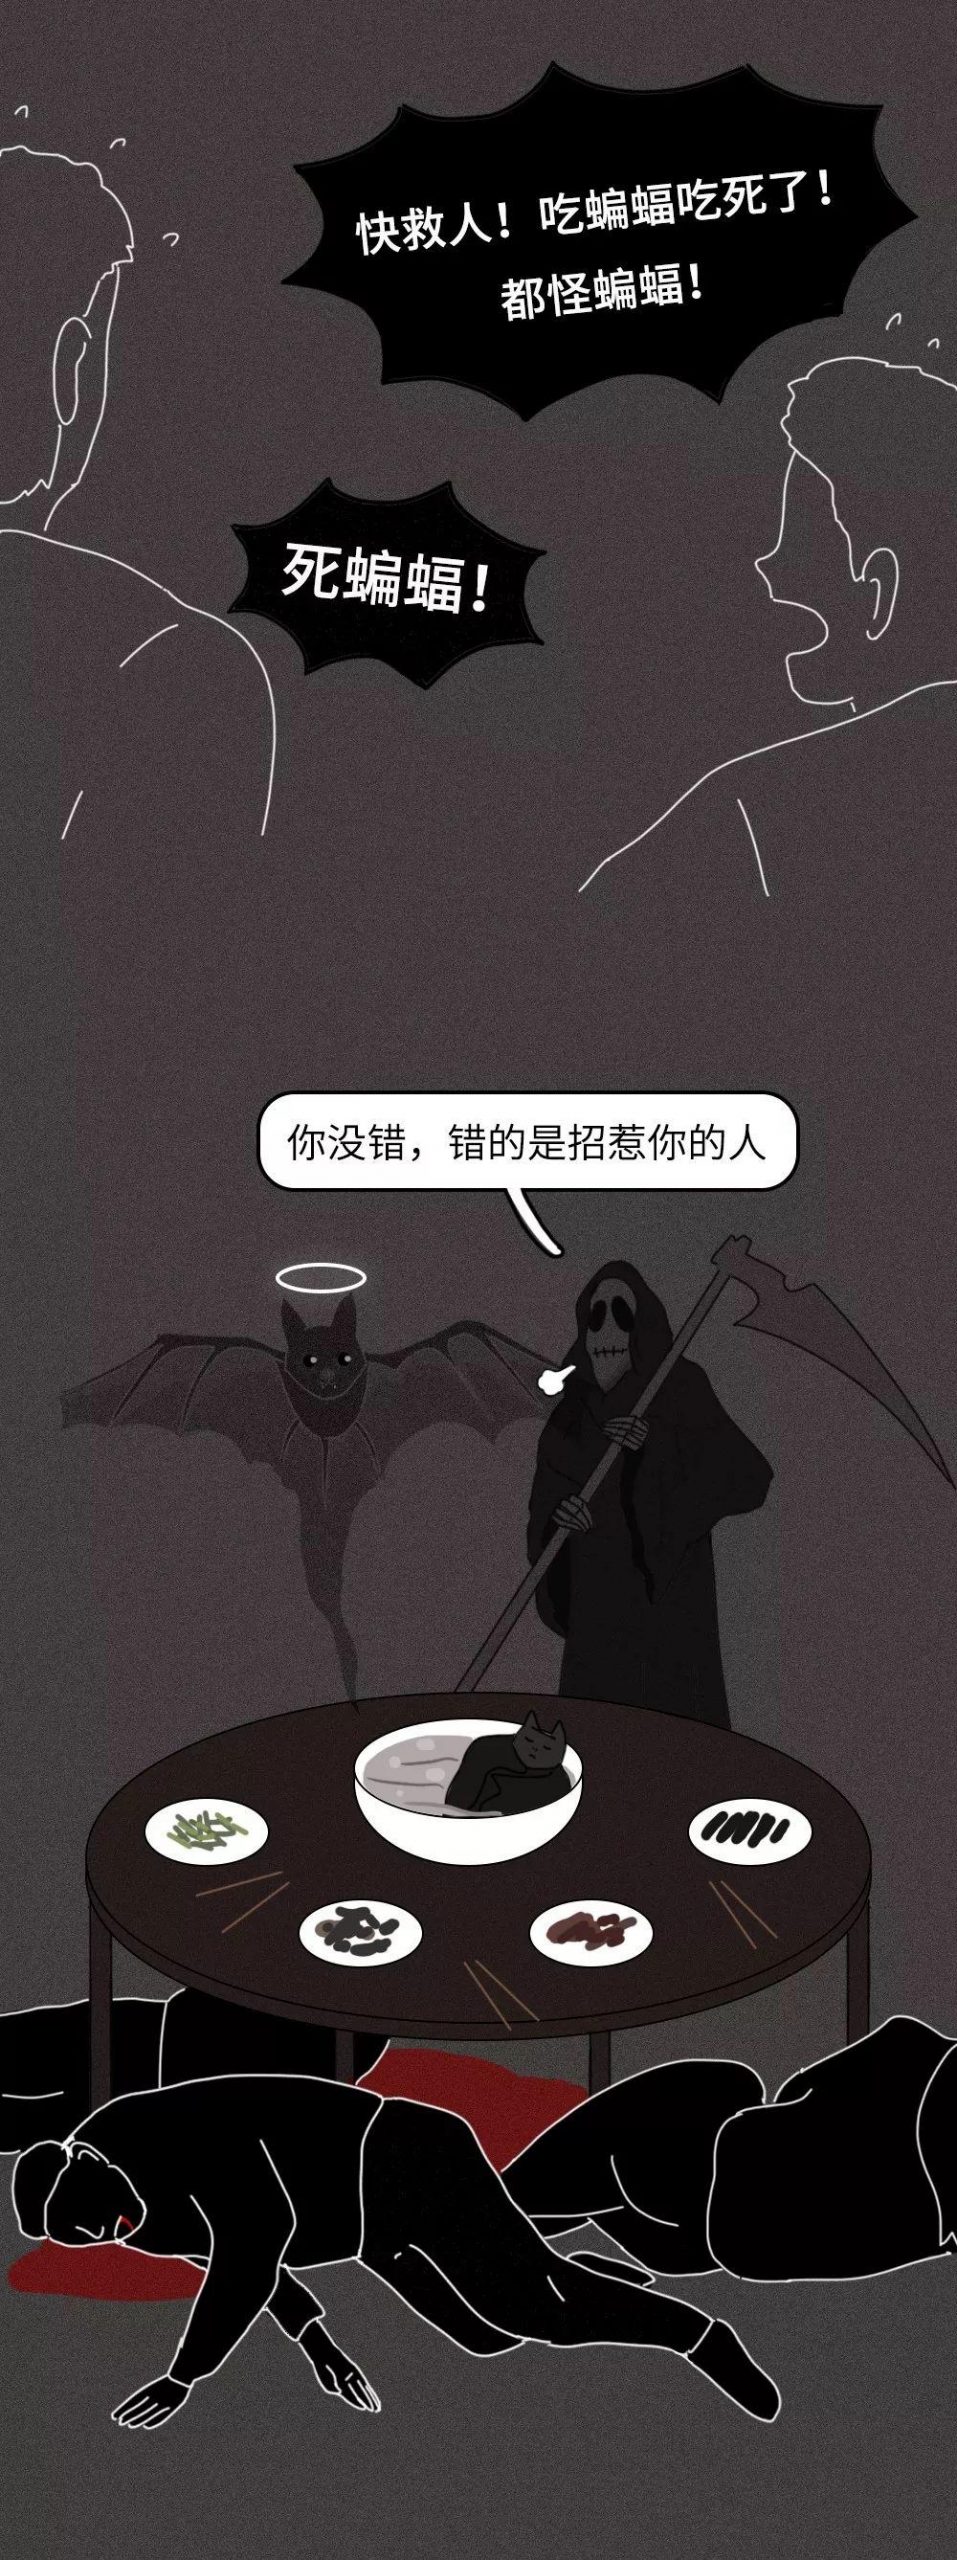 一只蝙蝠的自述在朋友圈火了：千 万 不 要 吃 野 味 ！